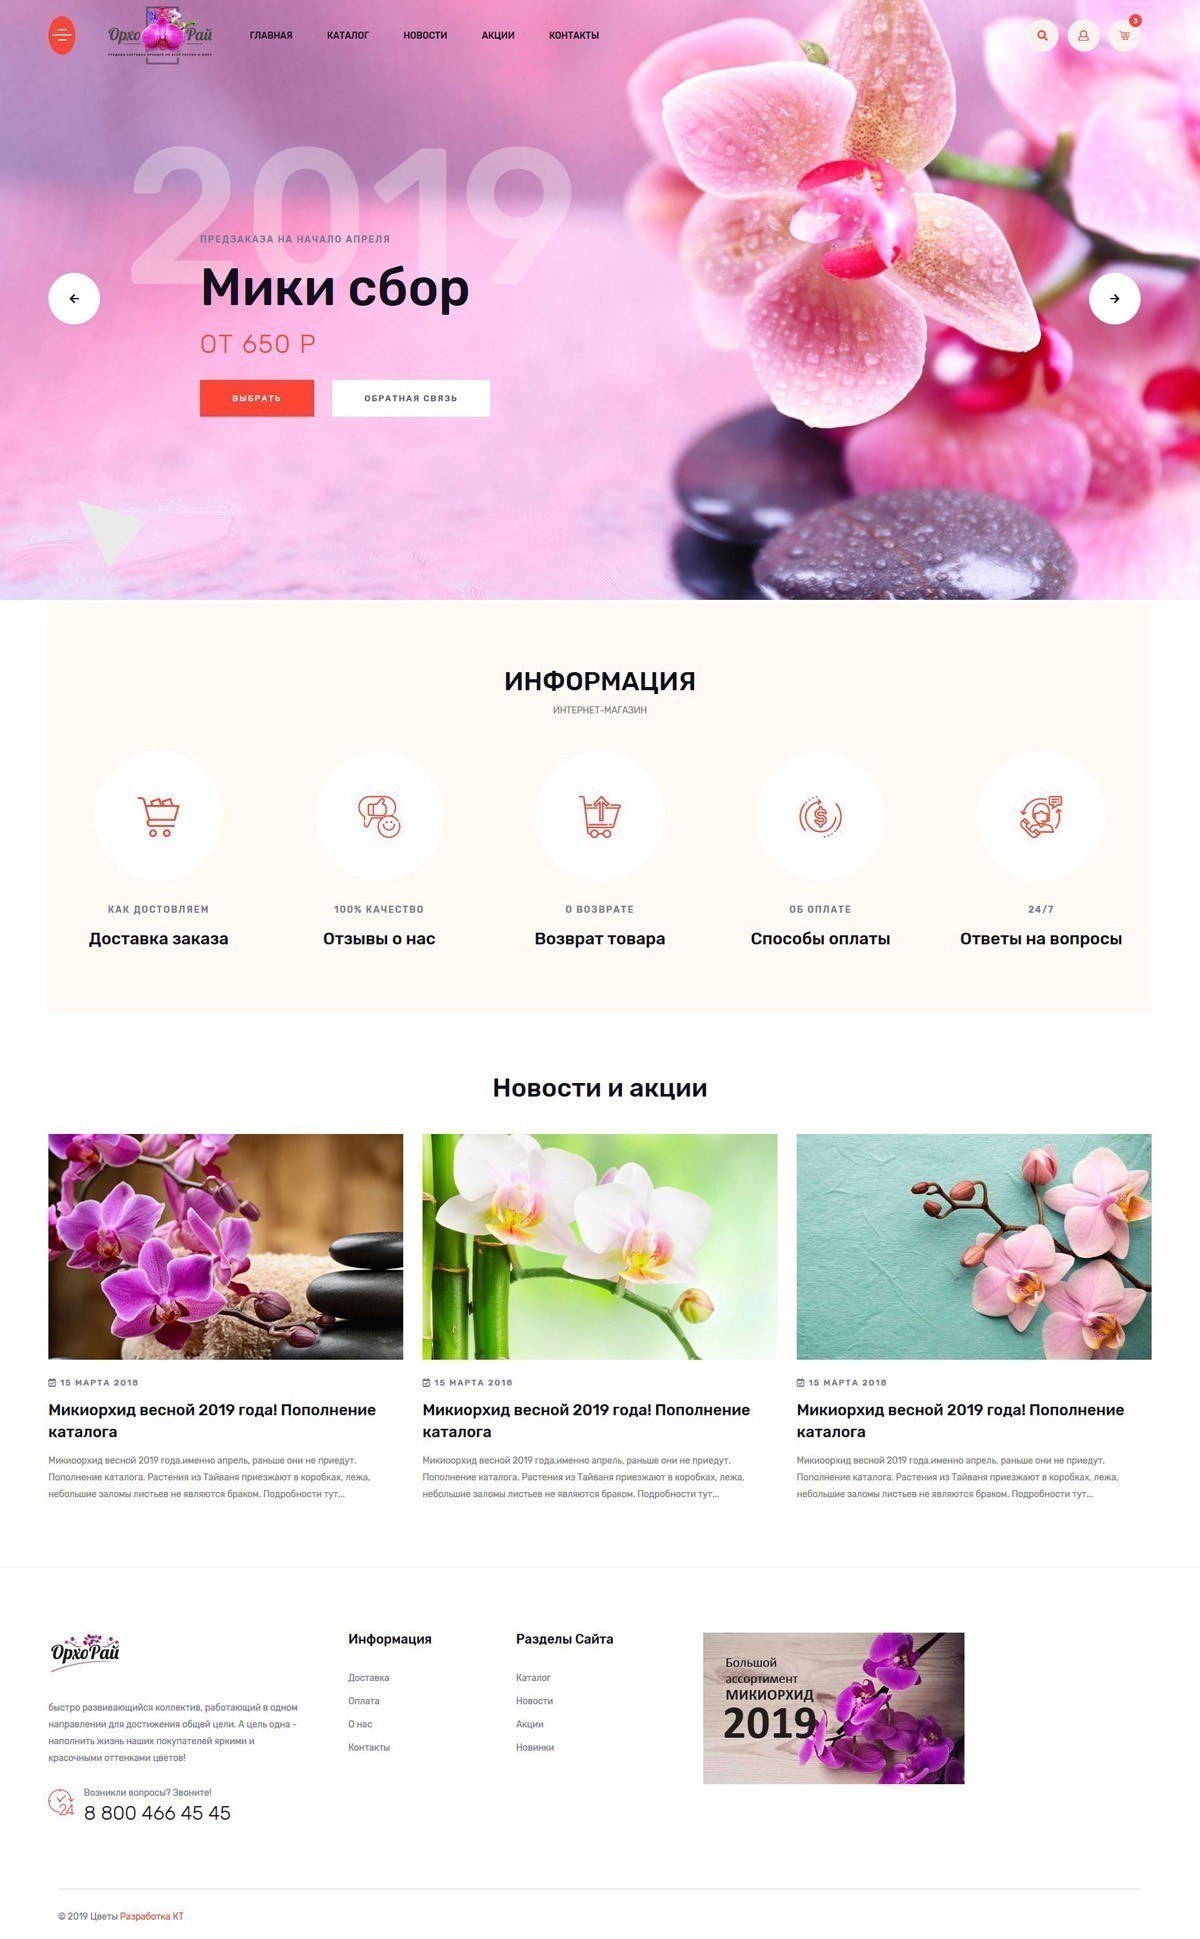 Продвижение страницы инстаграм цветы, создание интернет магазина Краснодар